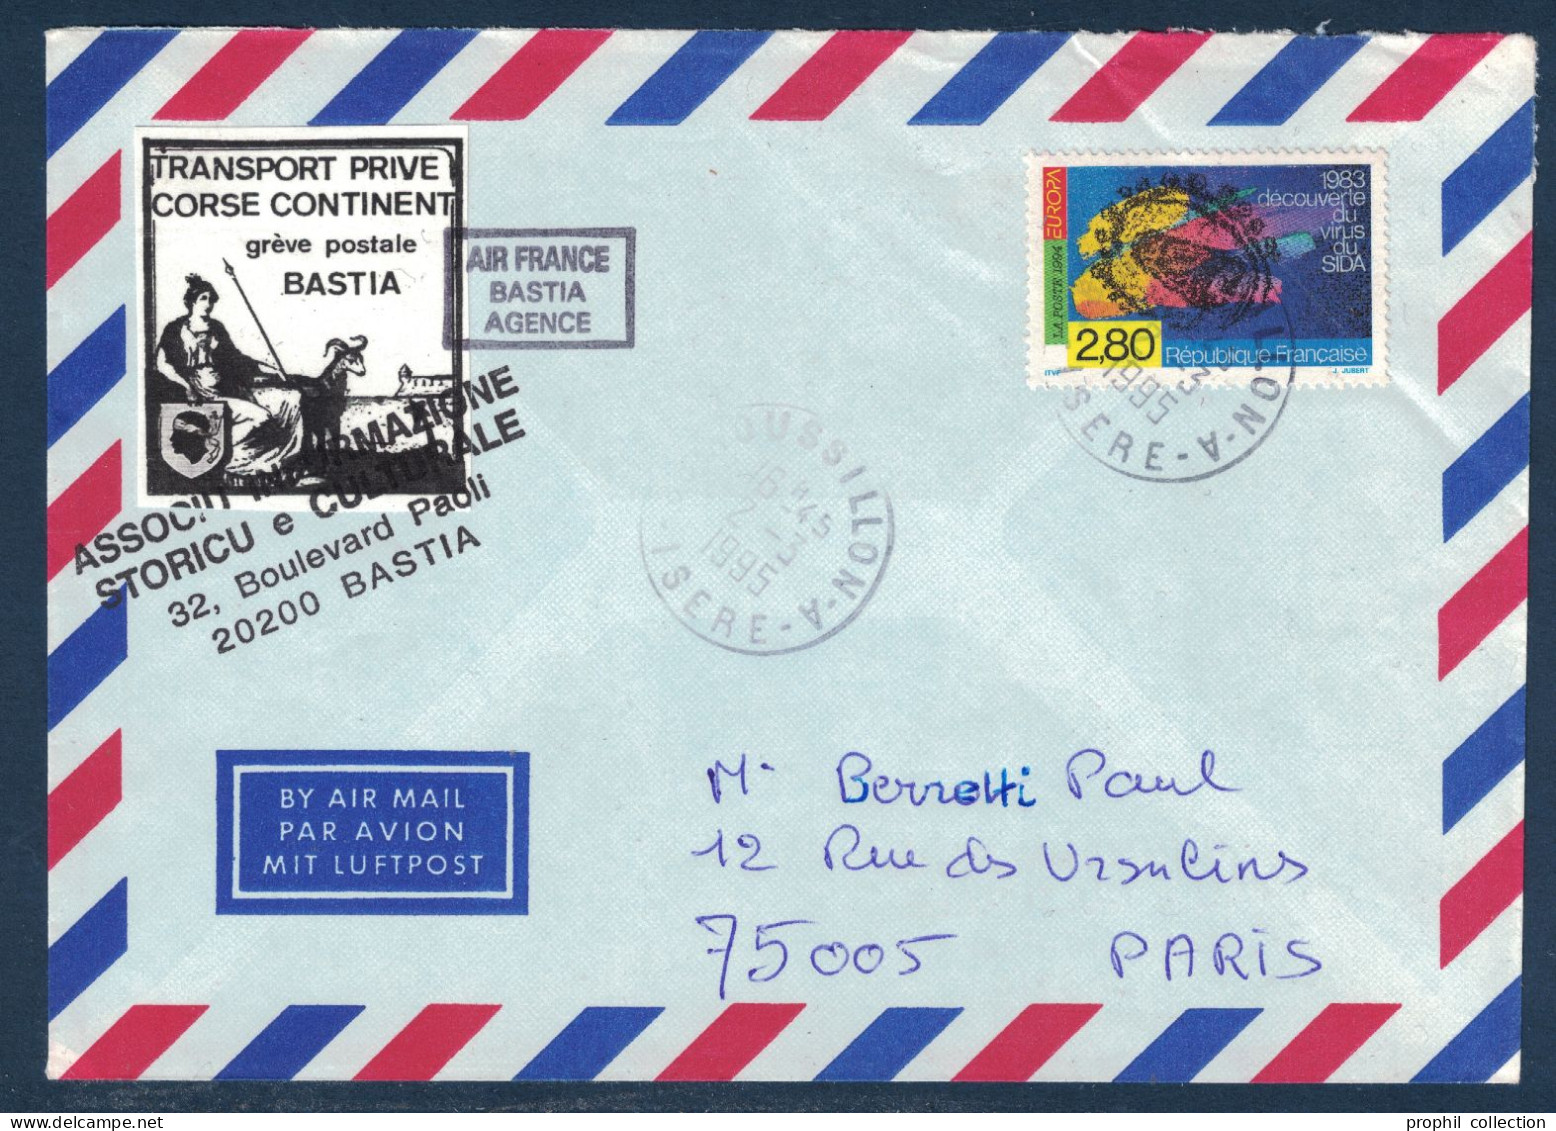 LETTRE GREVE POSTALE BASTIA 1995 VIGNETTE TRANSPORT PRIVÉ CORSE CONTINENT + TIMBRE SIDA Pour PARIS AIR FRANCE AGENCE - Documenti